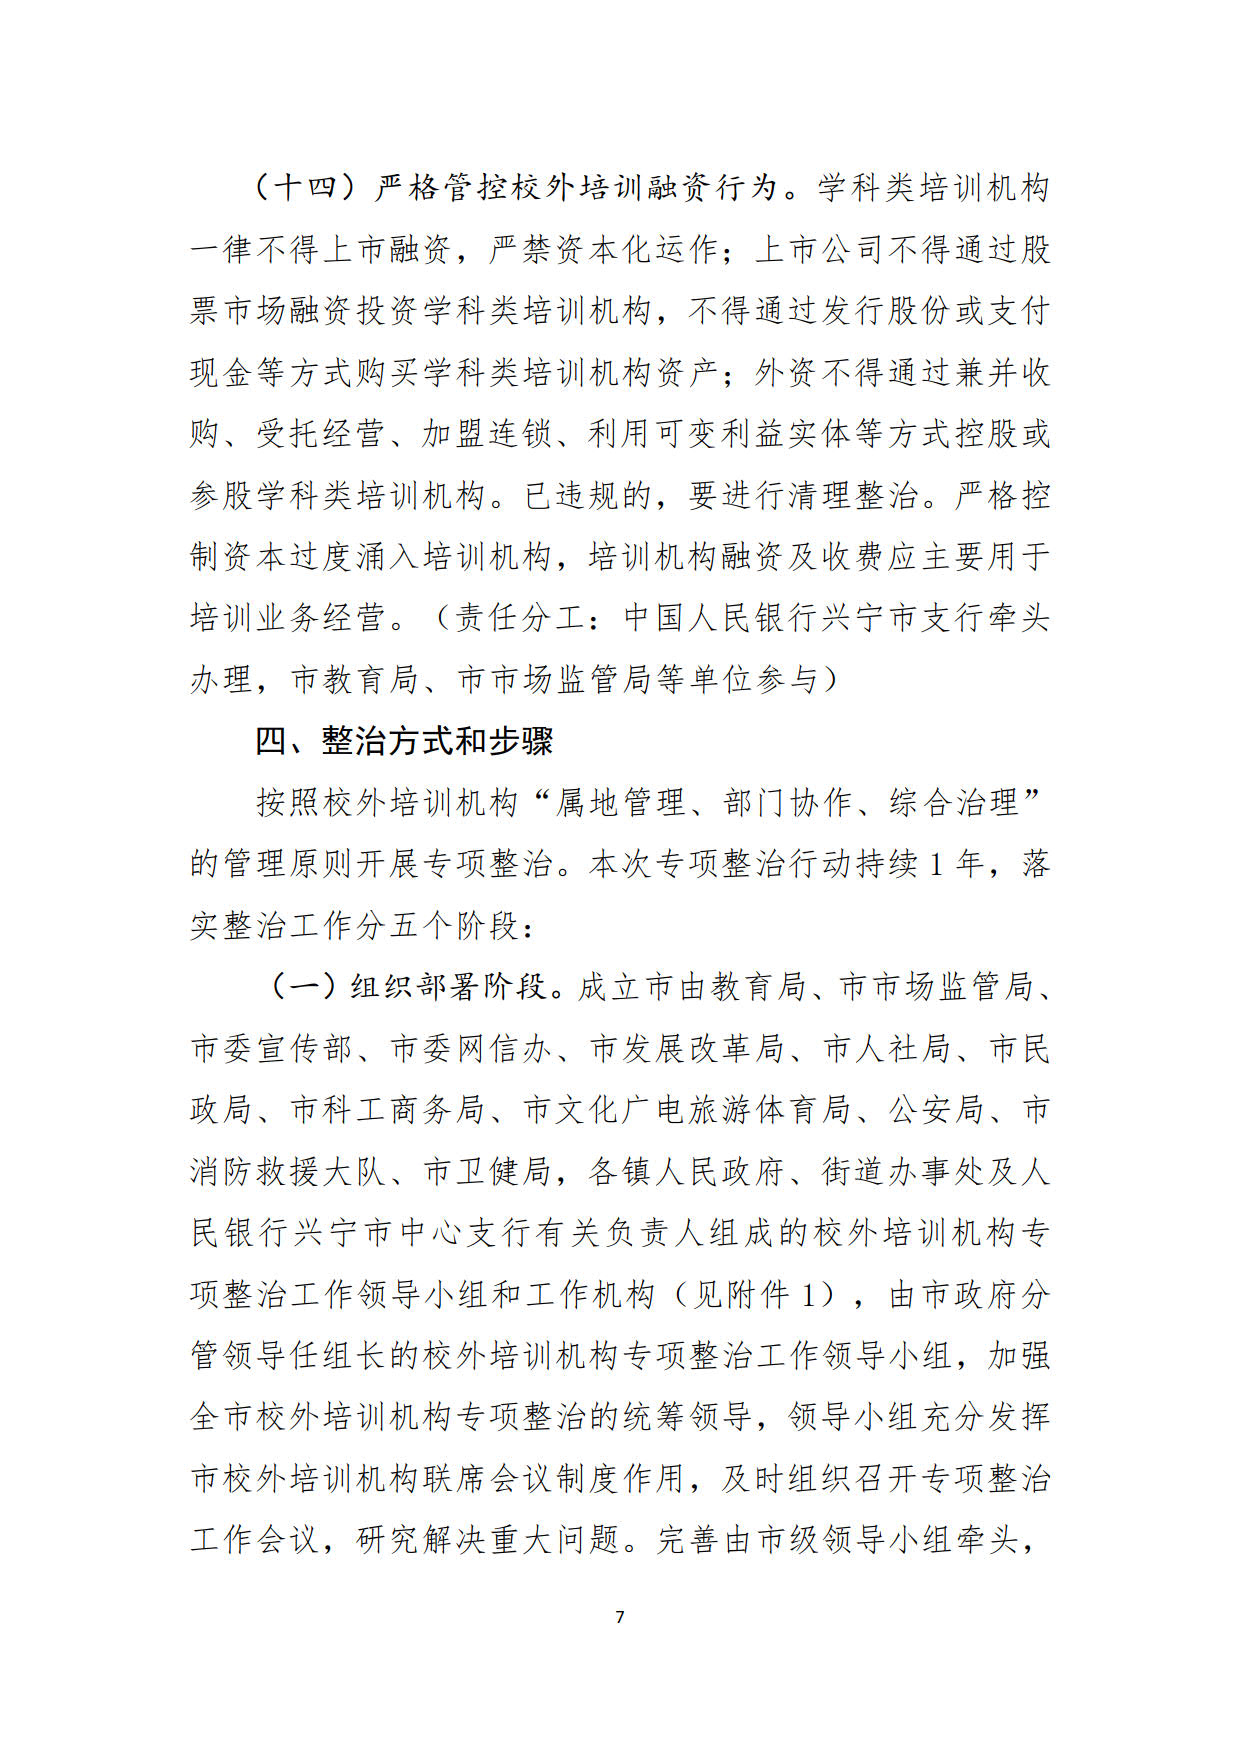 （20211213）兴宁市校外培训机构专项整治方案（征求意见稿）_7.jpg